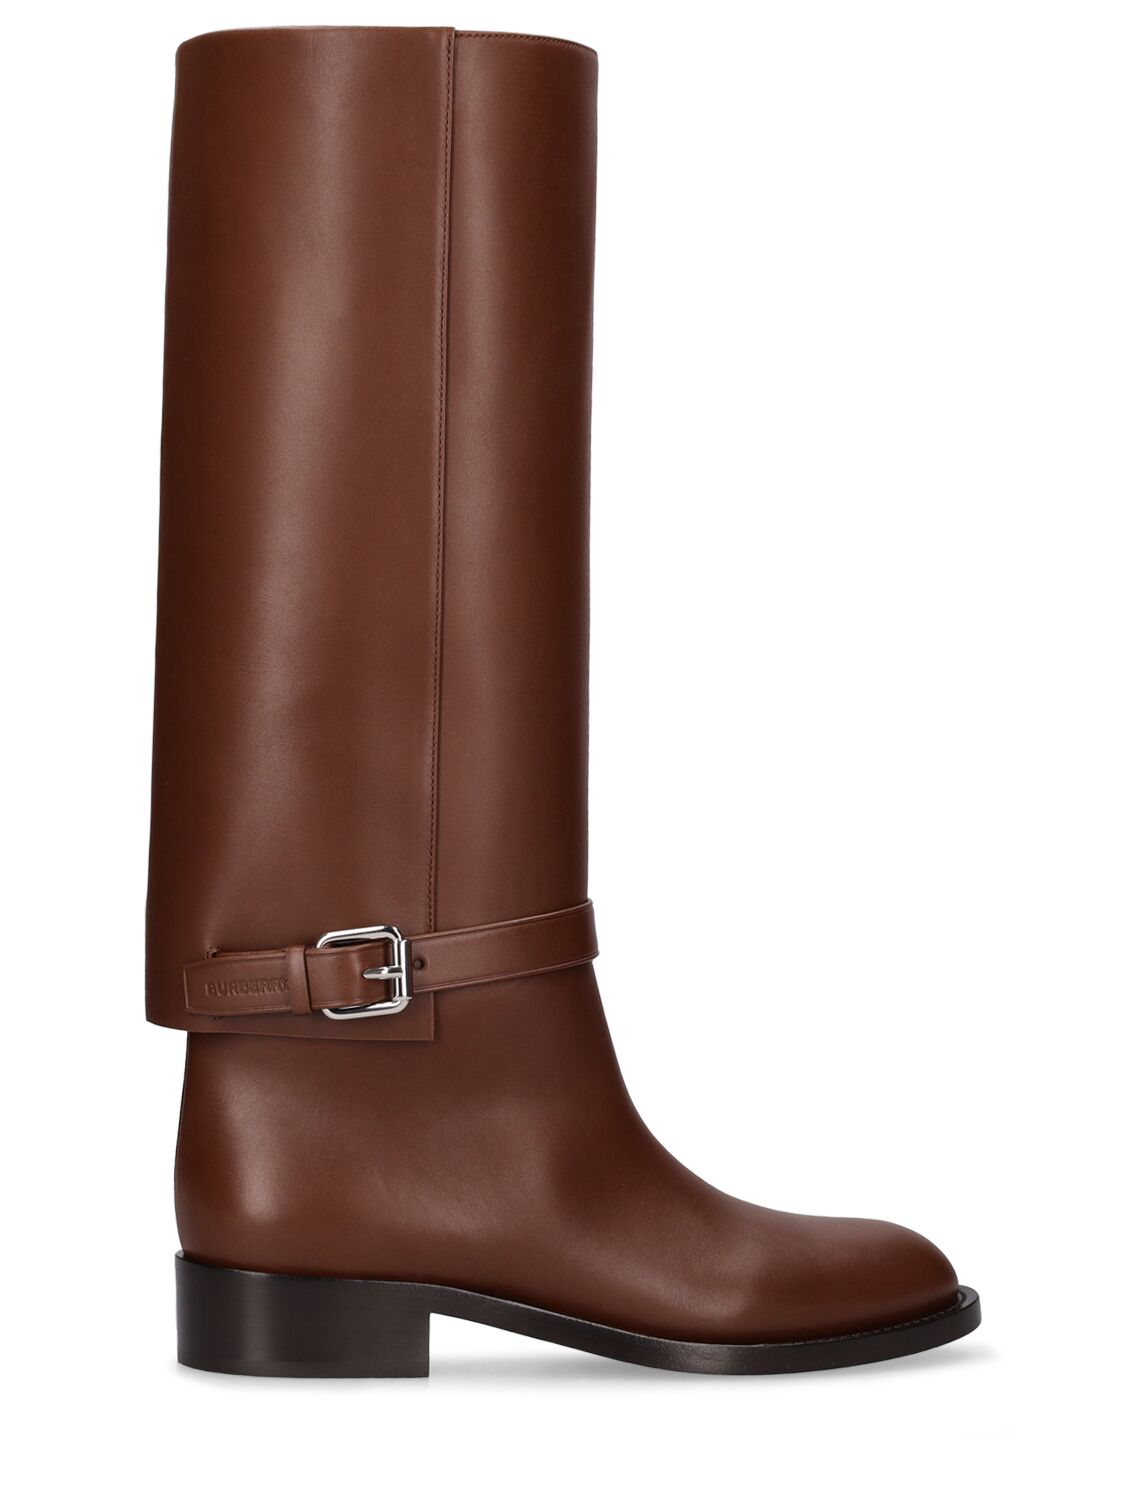 Mm Emmett Leather Tall Boots - BURBERRY - Modalova